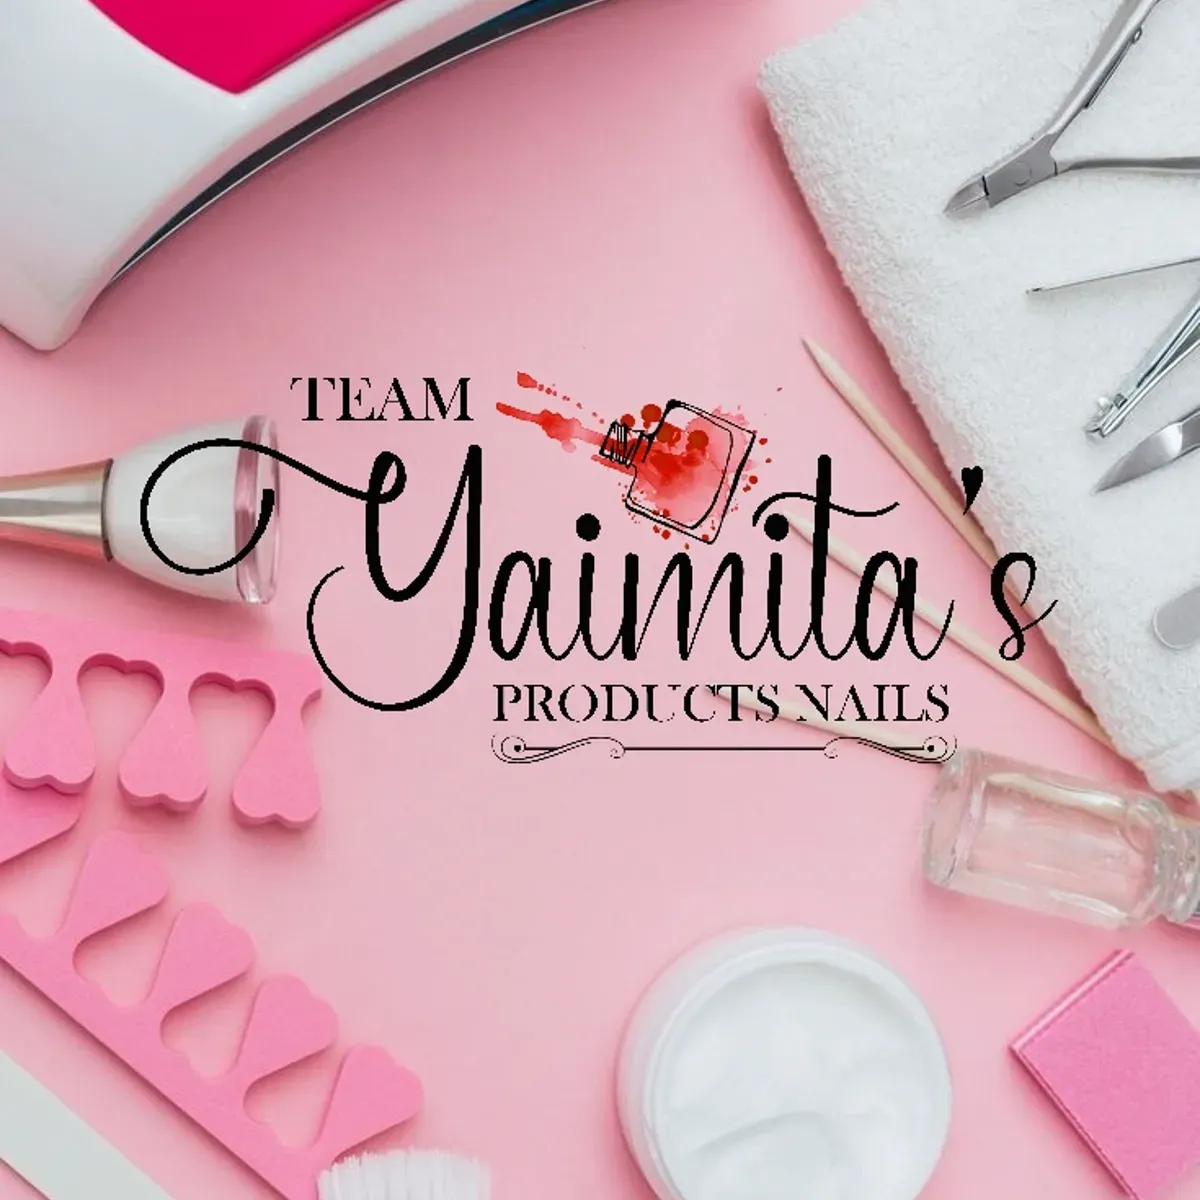 Yaimita's Nails